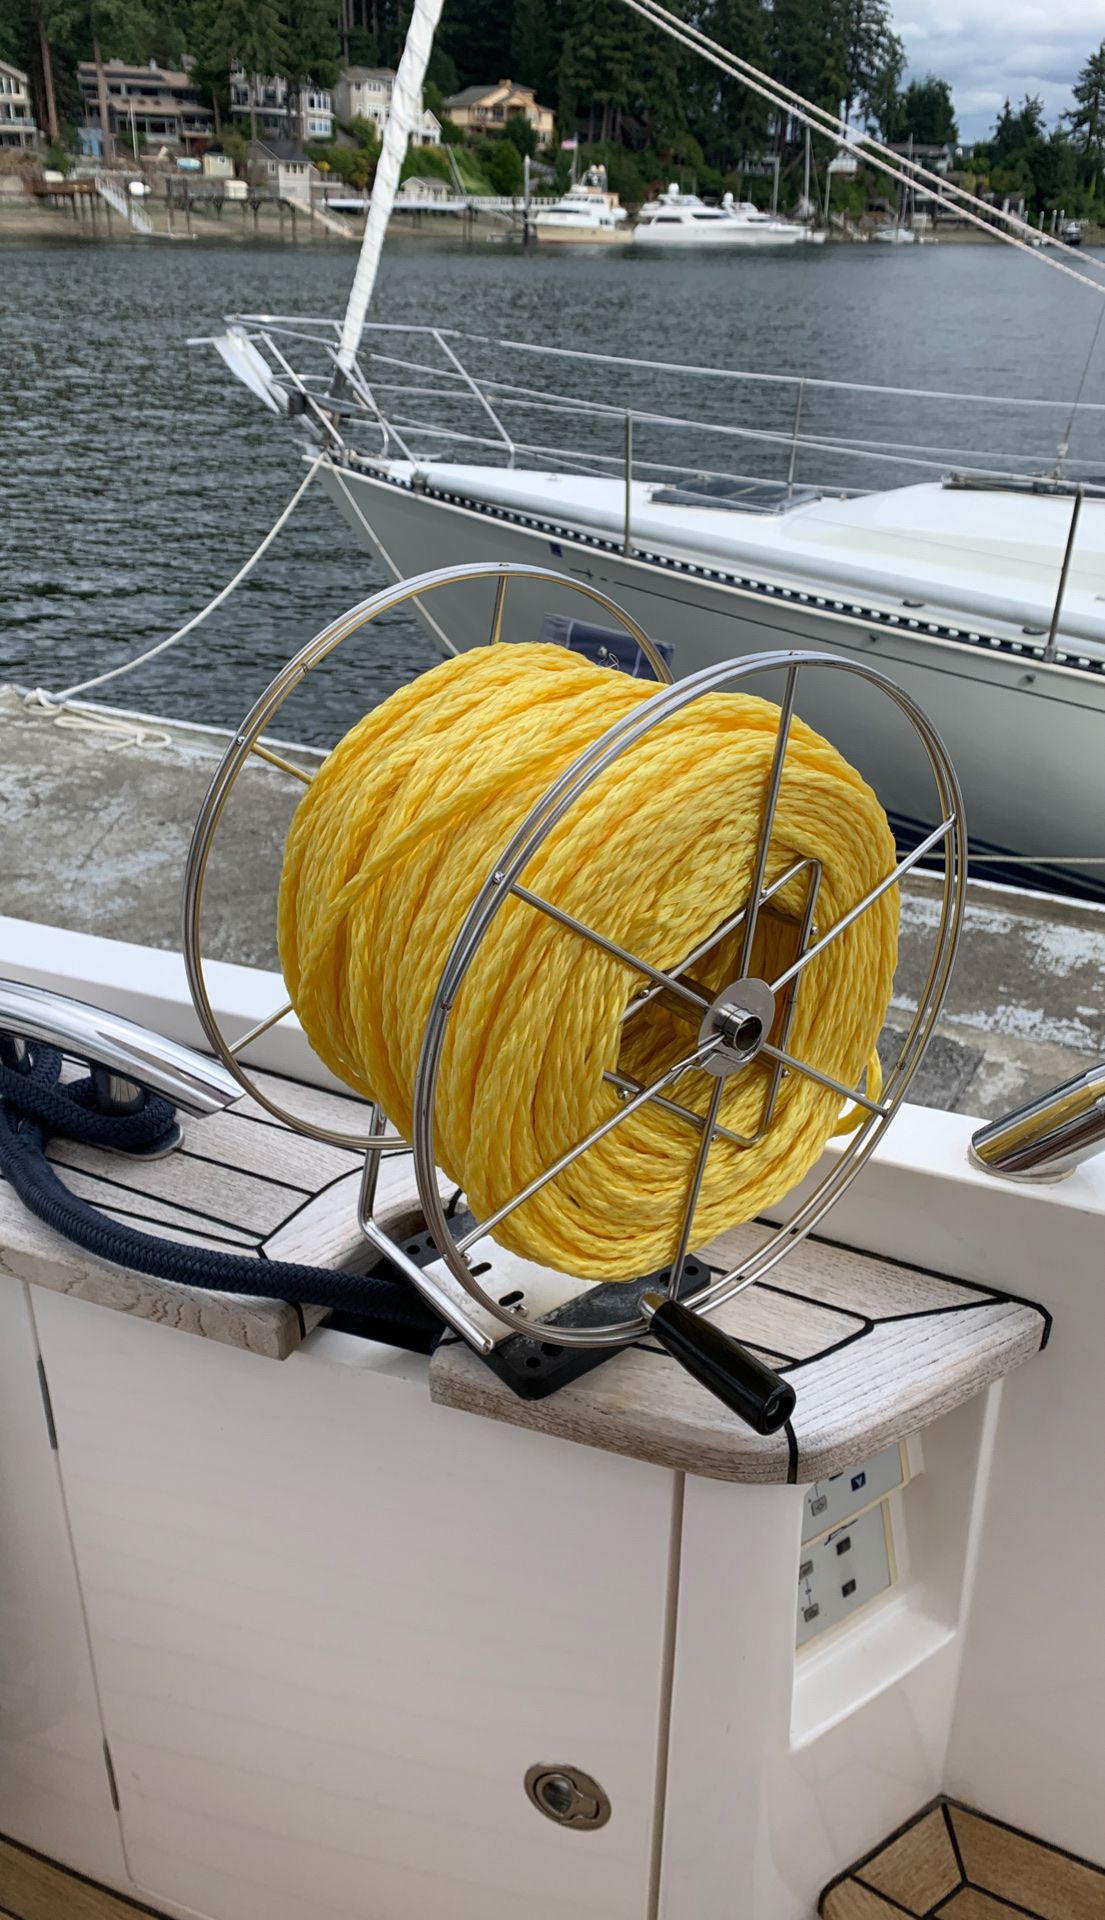 Stern tie reel with 150’ floating rope